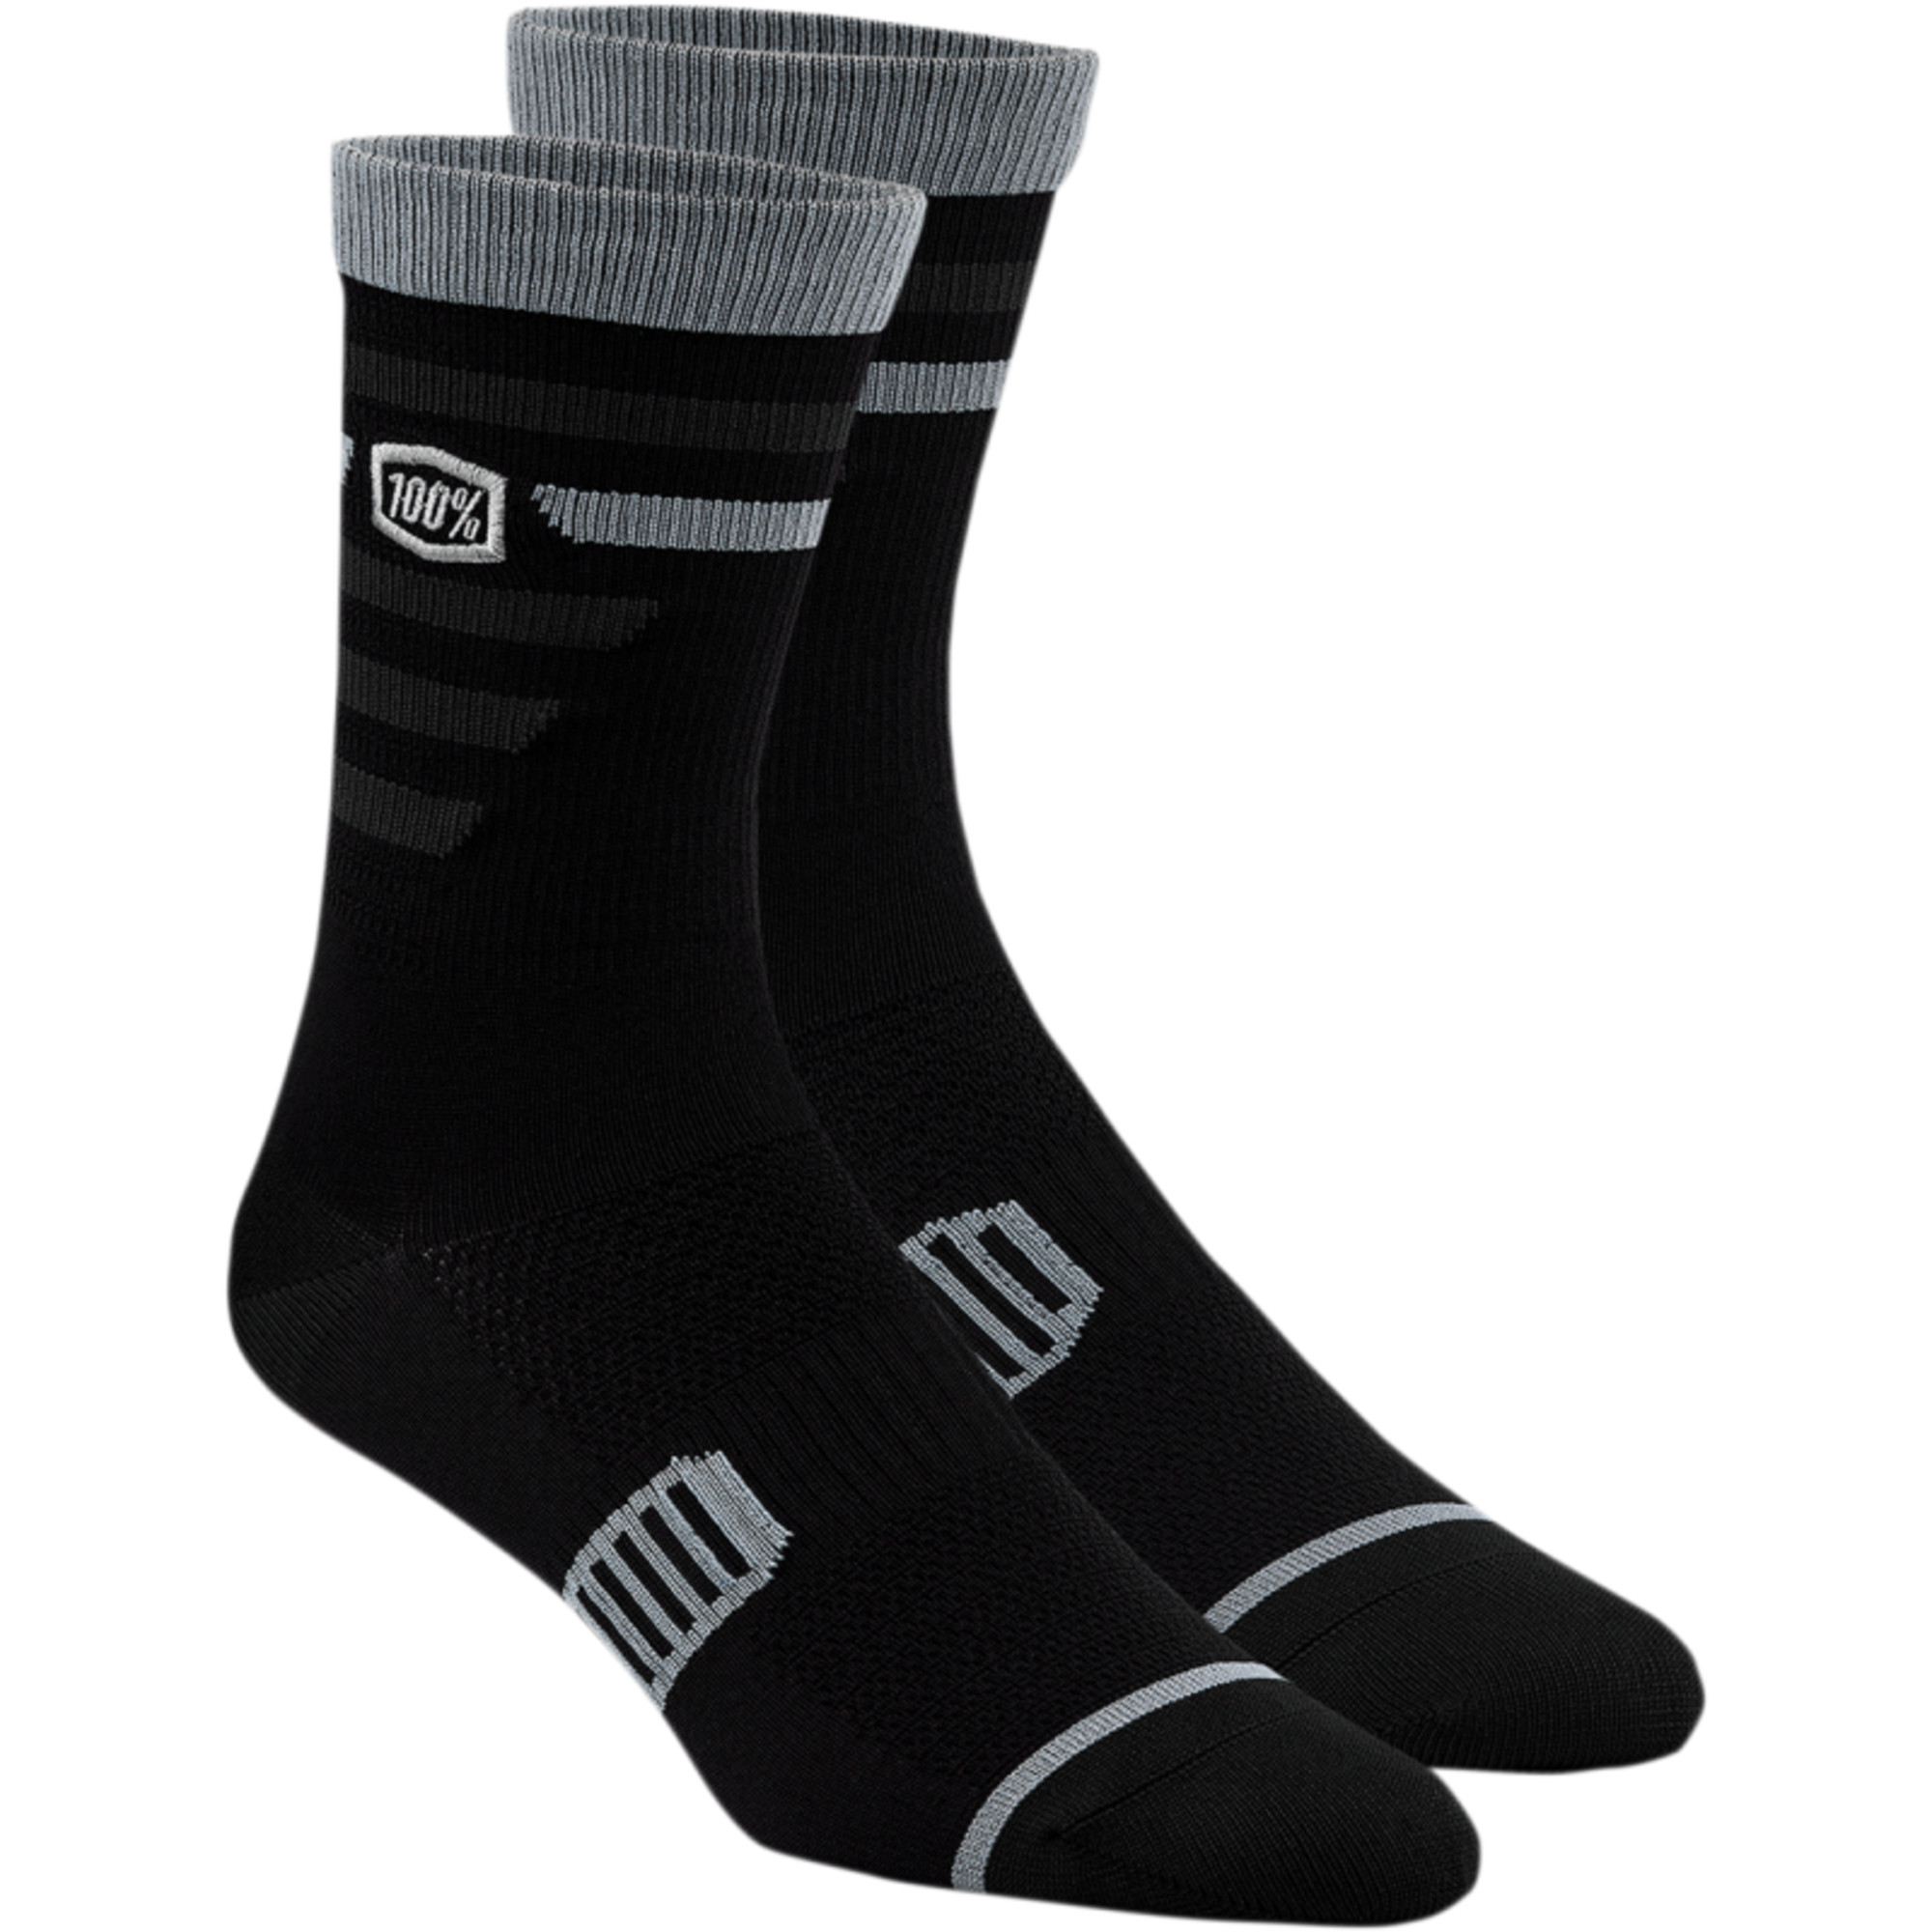 100 percent socks for mens men performance advocate